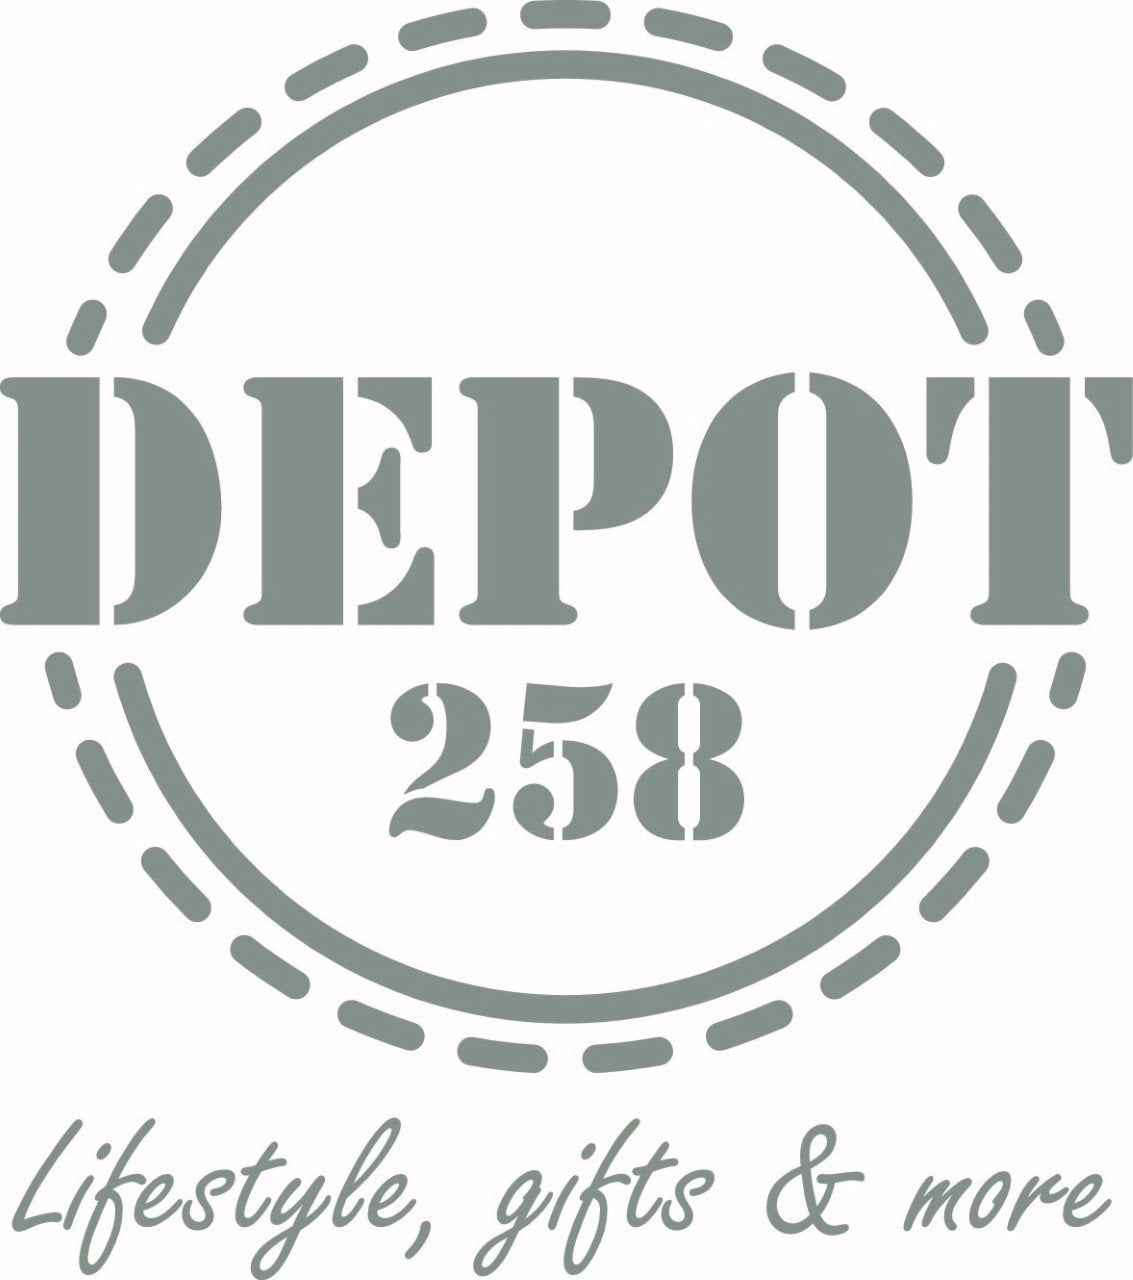 Depot 258